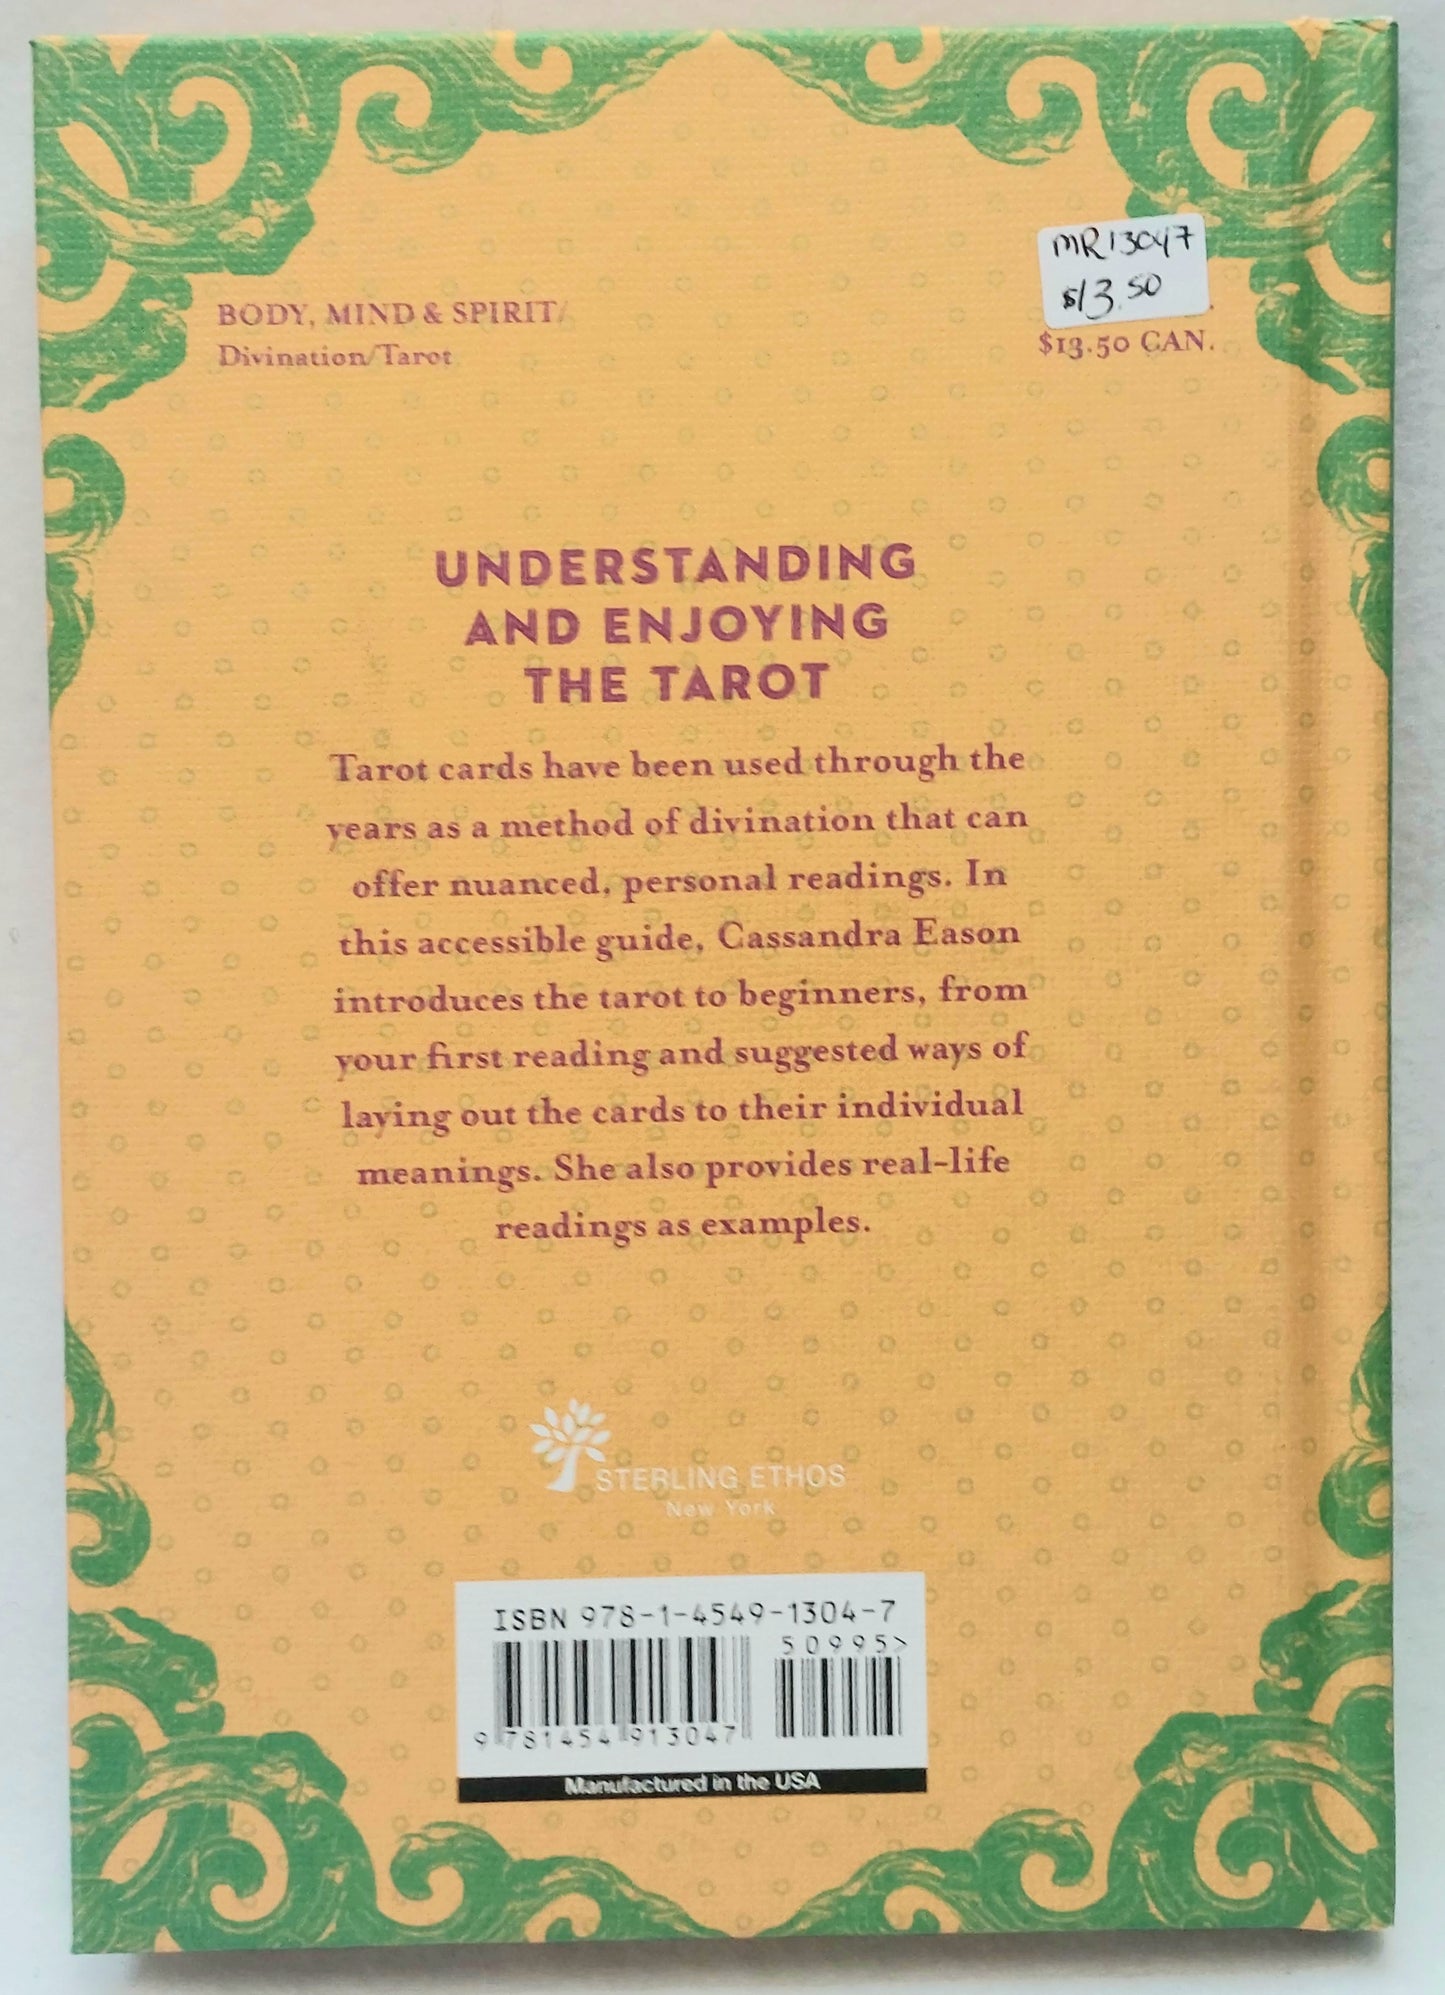 A Little Bit of Tarot- Tarot Introduction Book